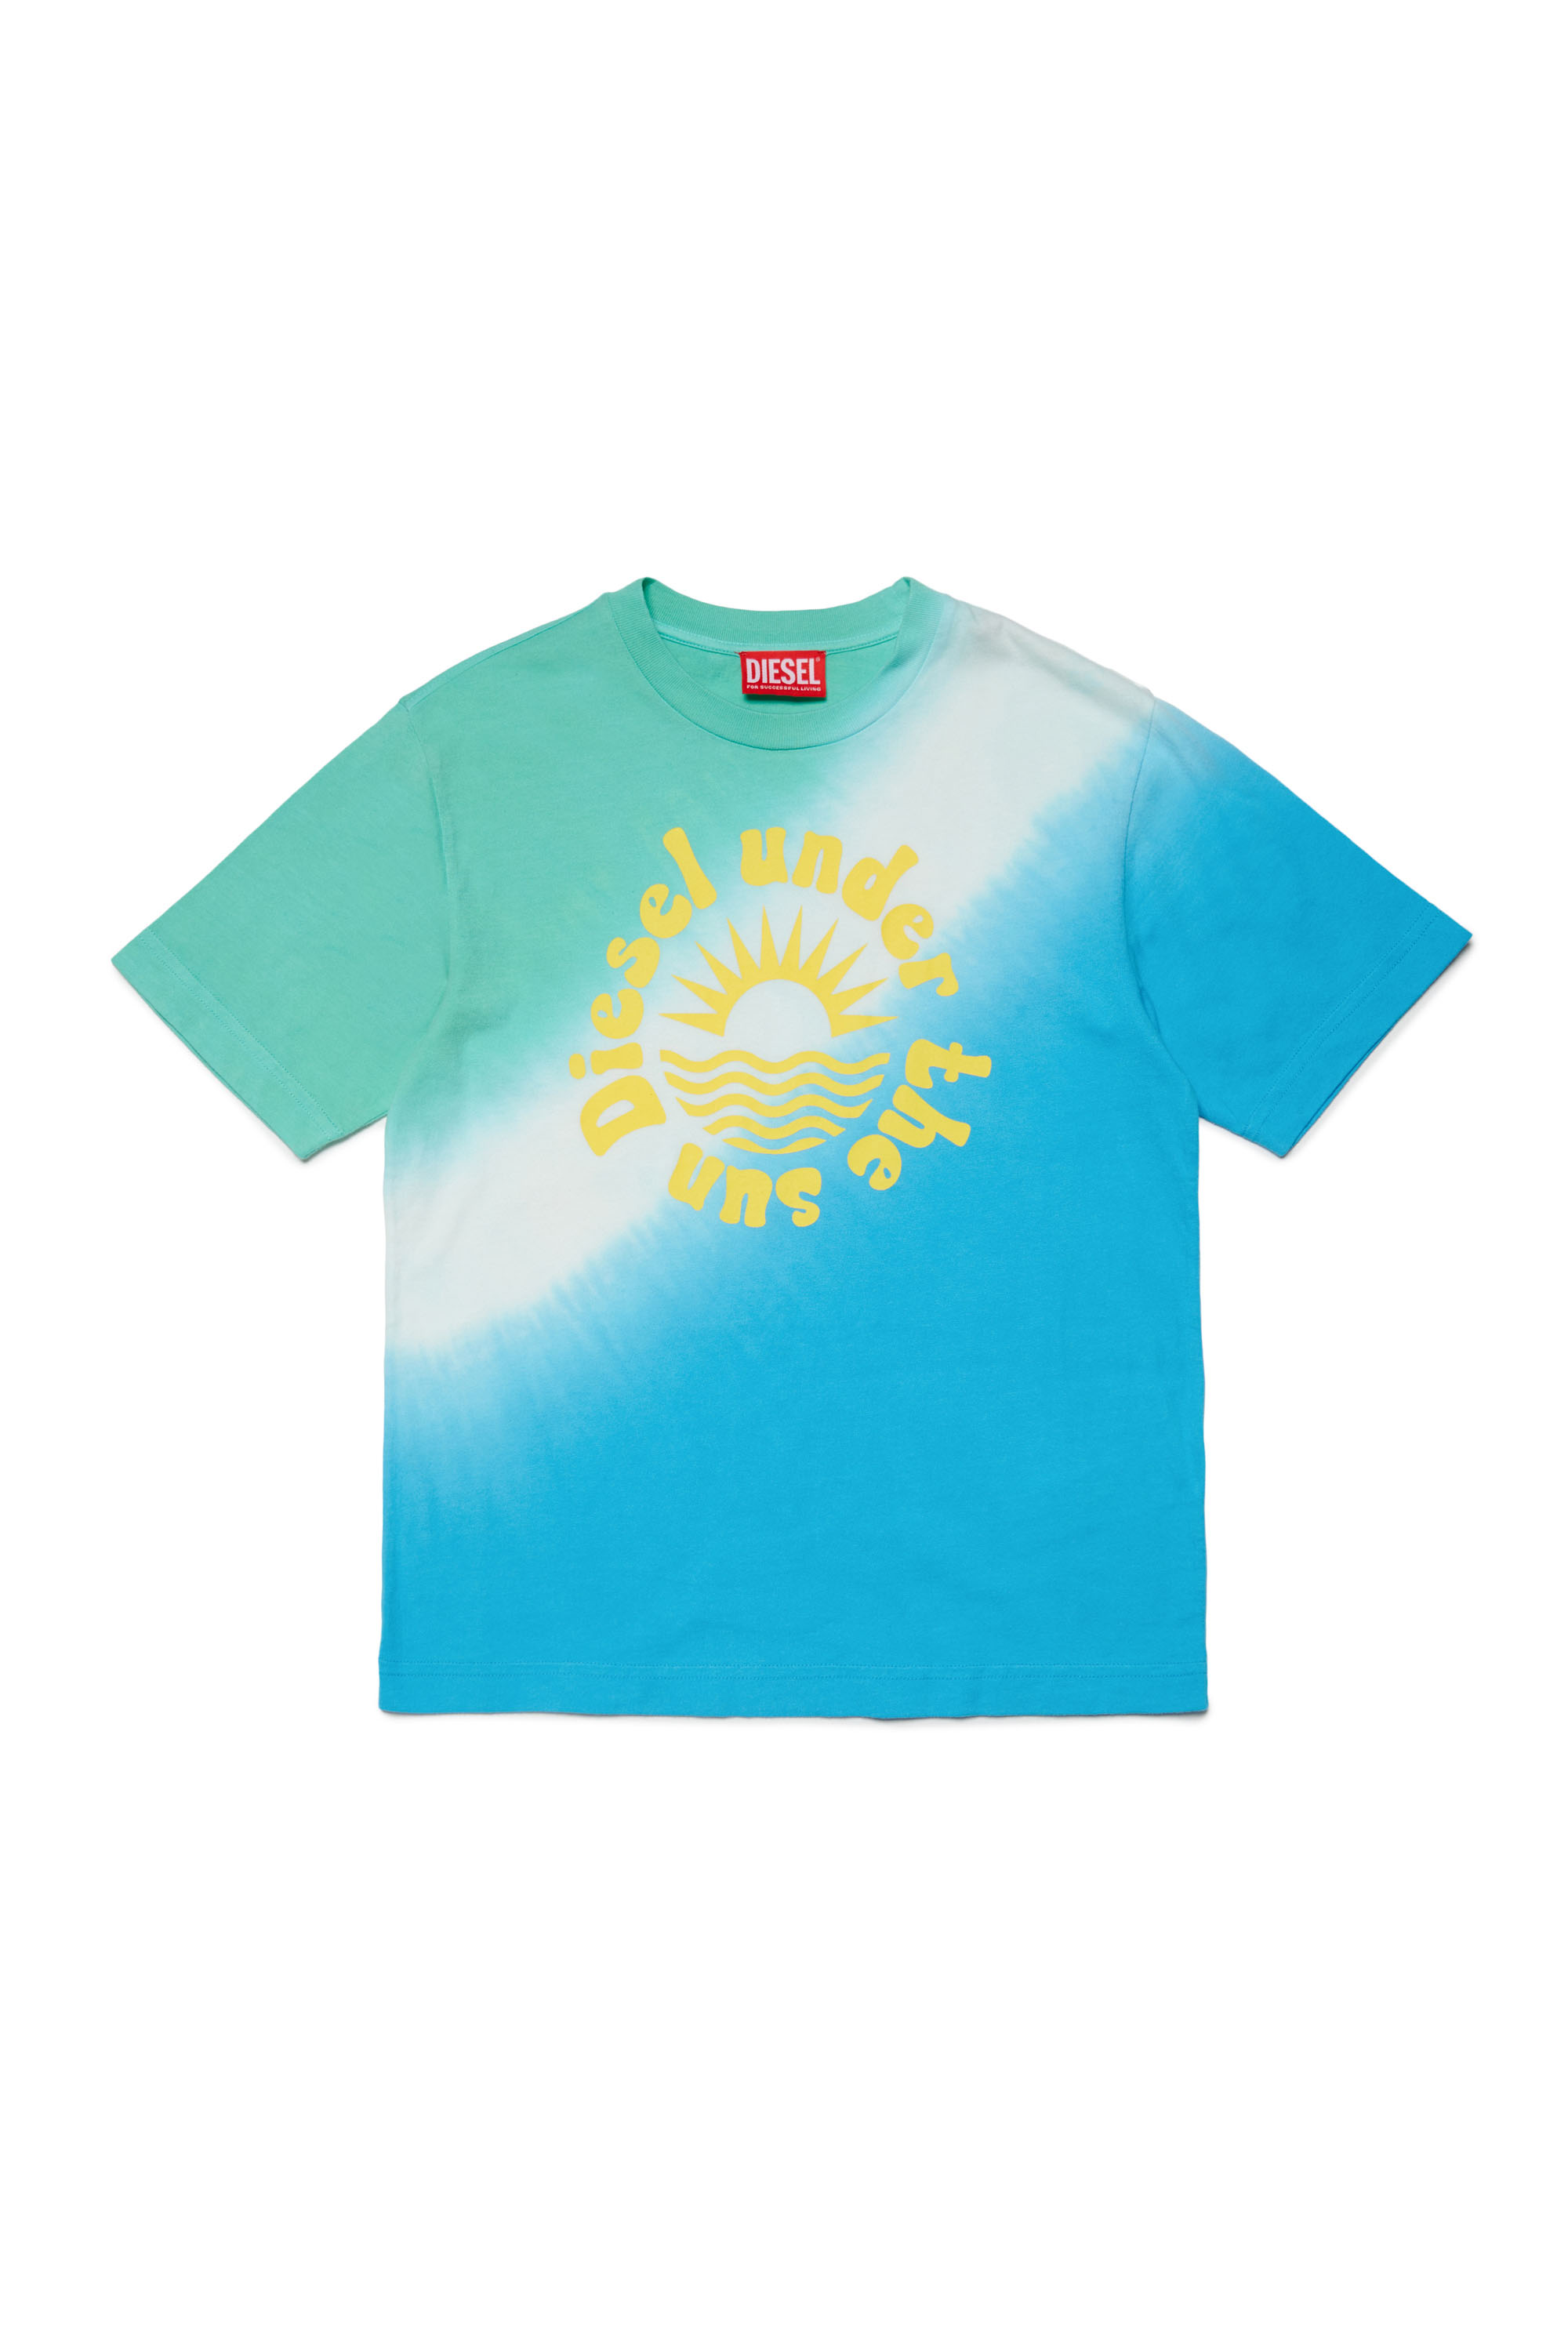 Diesel - MTSUN OVER, Homme T-shirt tie-dye avec imprimé soleil in Bleu - Image 1